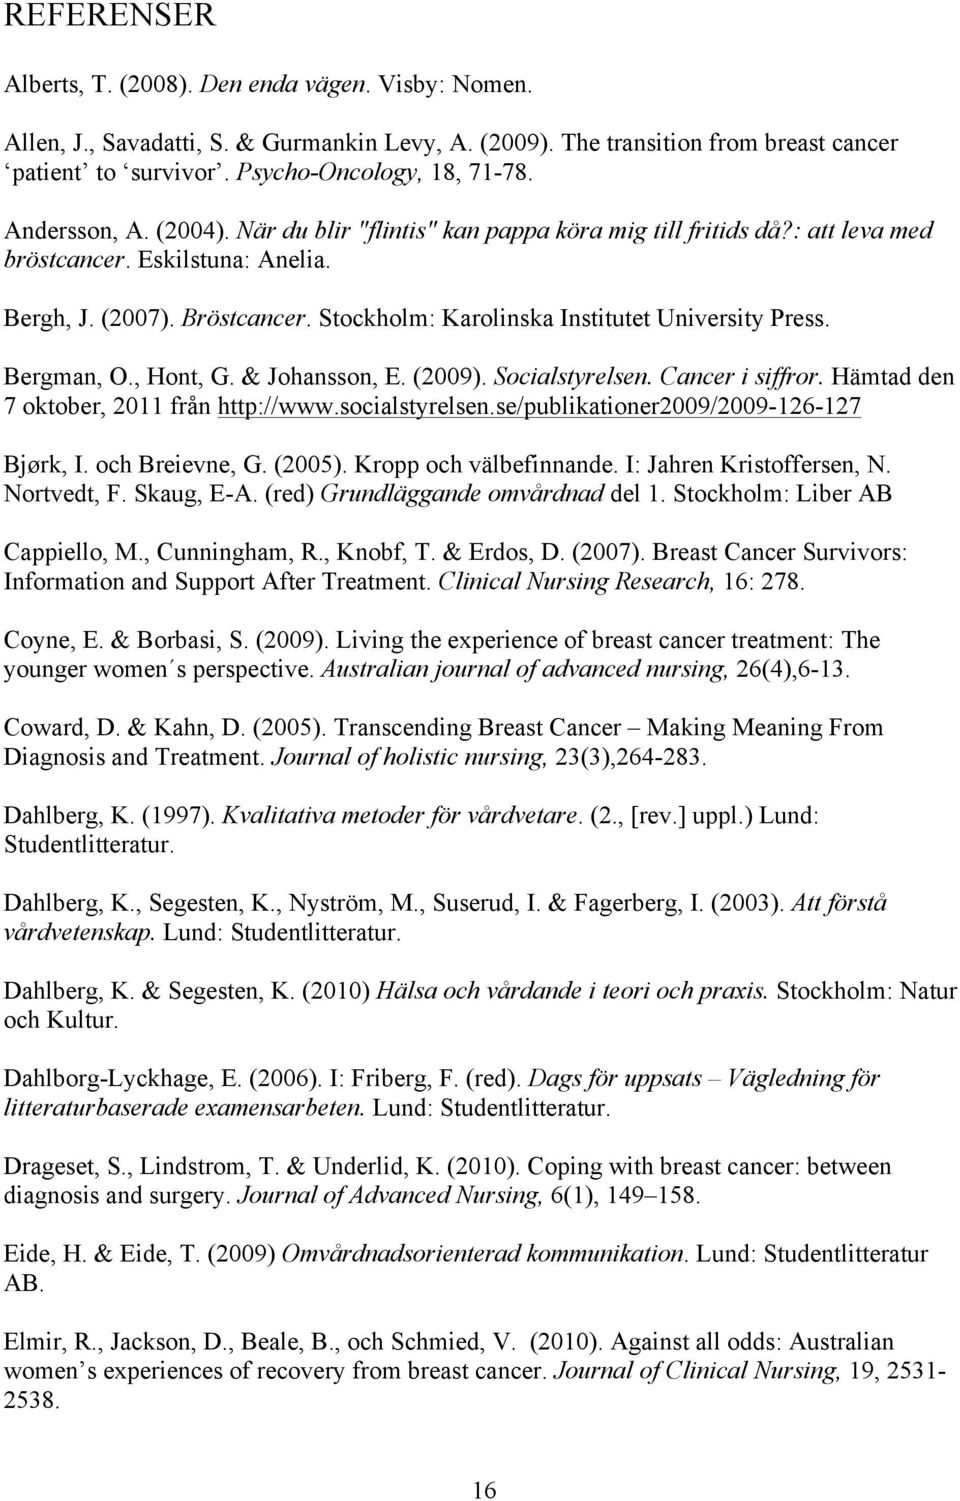 Stockholm: Karolinska Institutet University Press. Bergman, O., Hont, G. & Johansson, E. (2009). Socialstyrelsen. Cancer i siffror. Hämtad den 7 oktober, 2011 från http://www.socialstyrelsen.